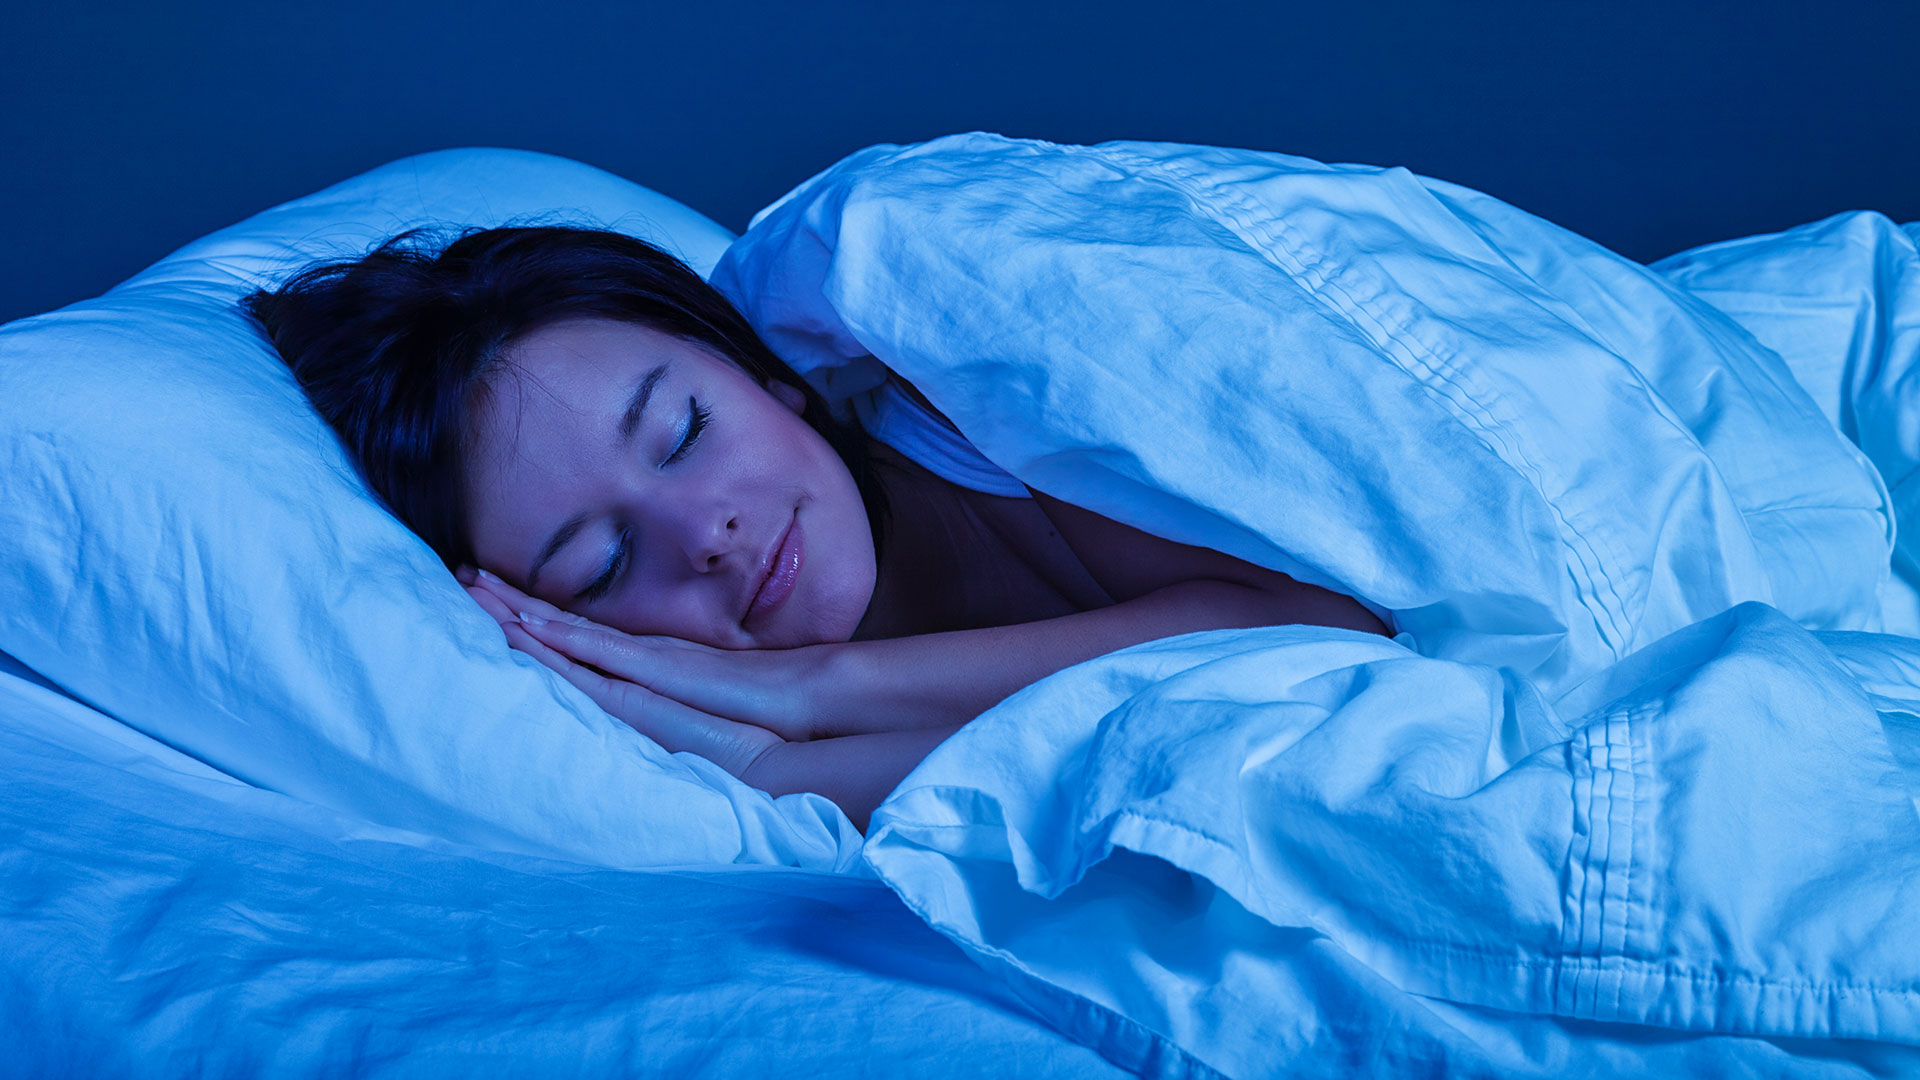 La posición lateral para dormir brinda otras ventajas, según los expertos (Getty Images)